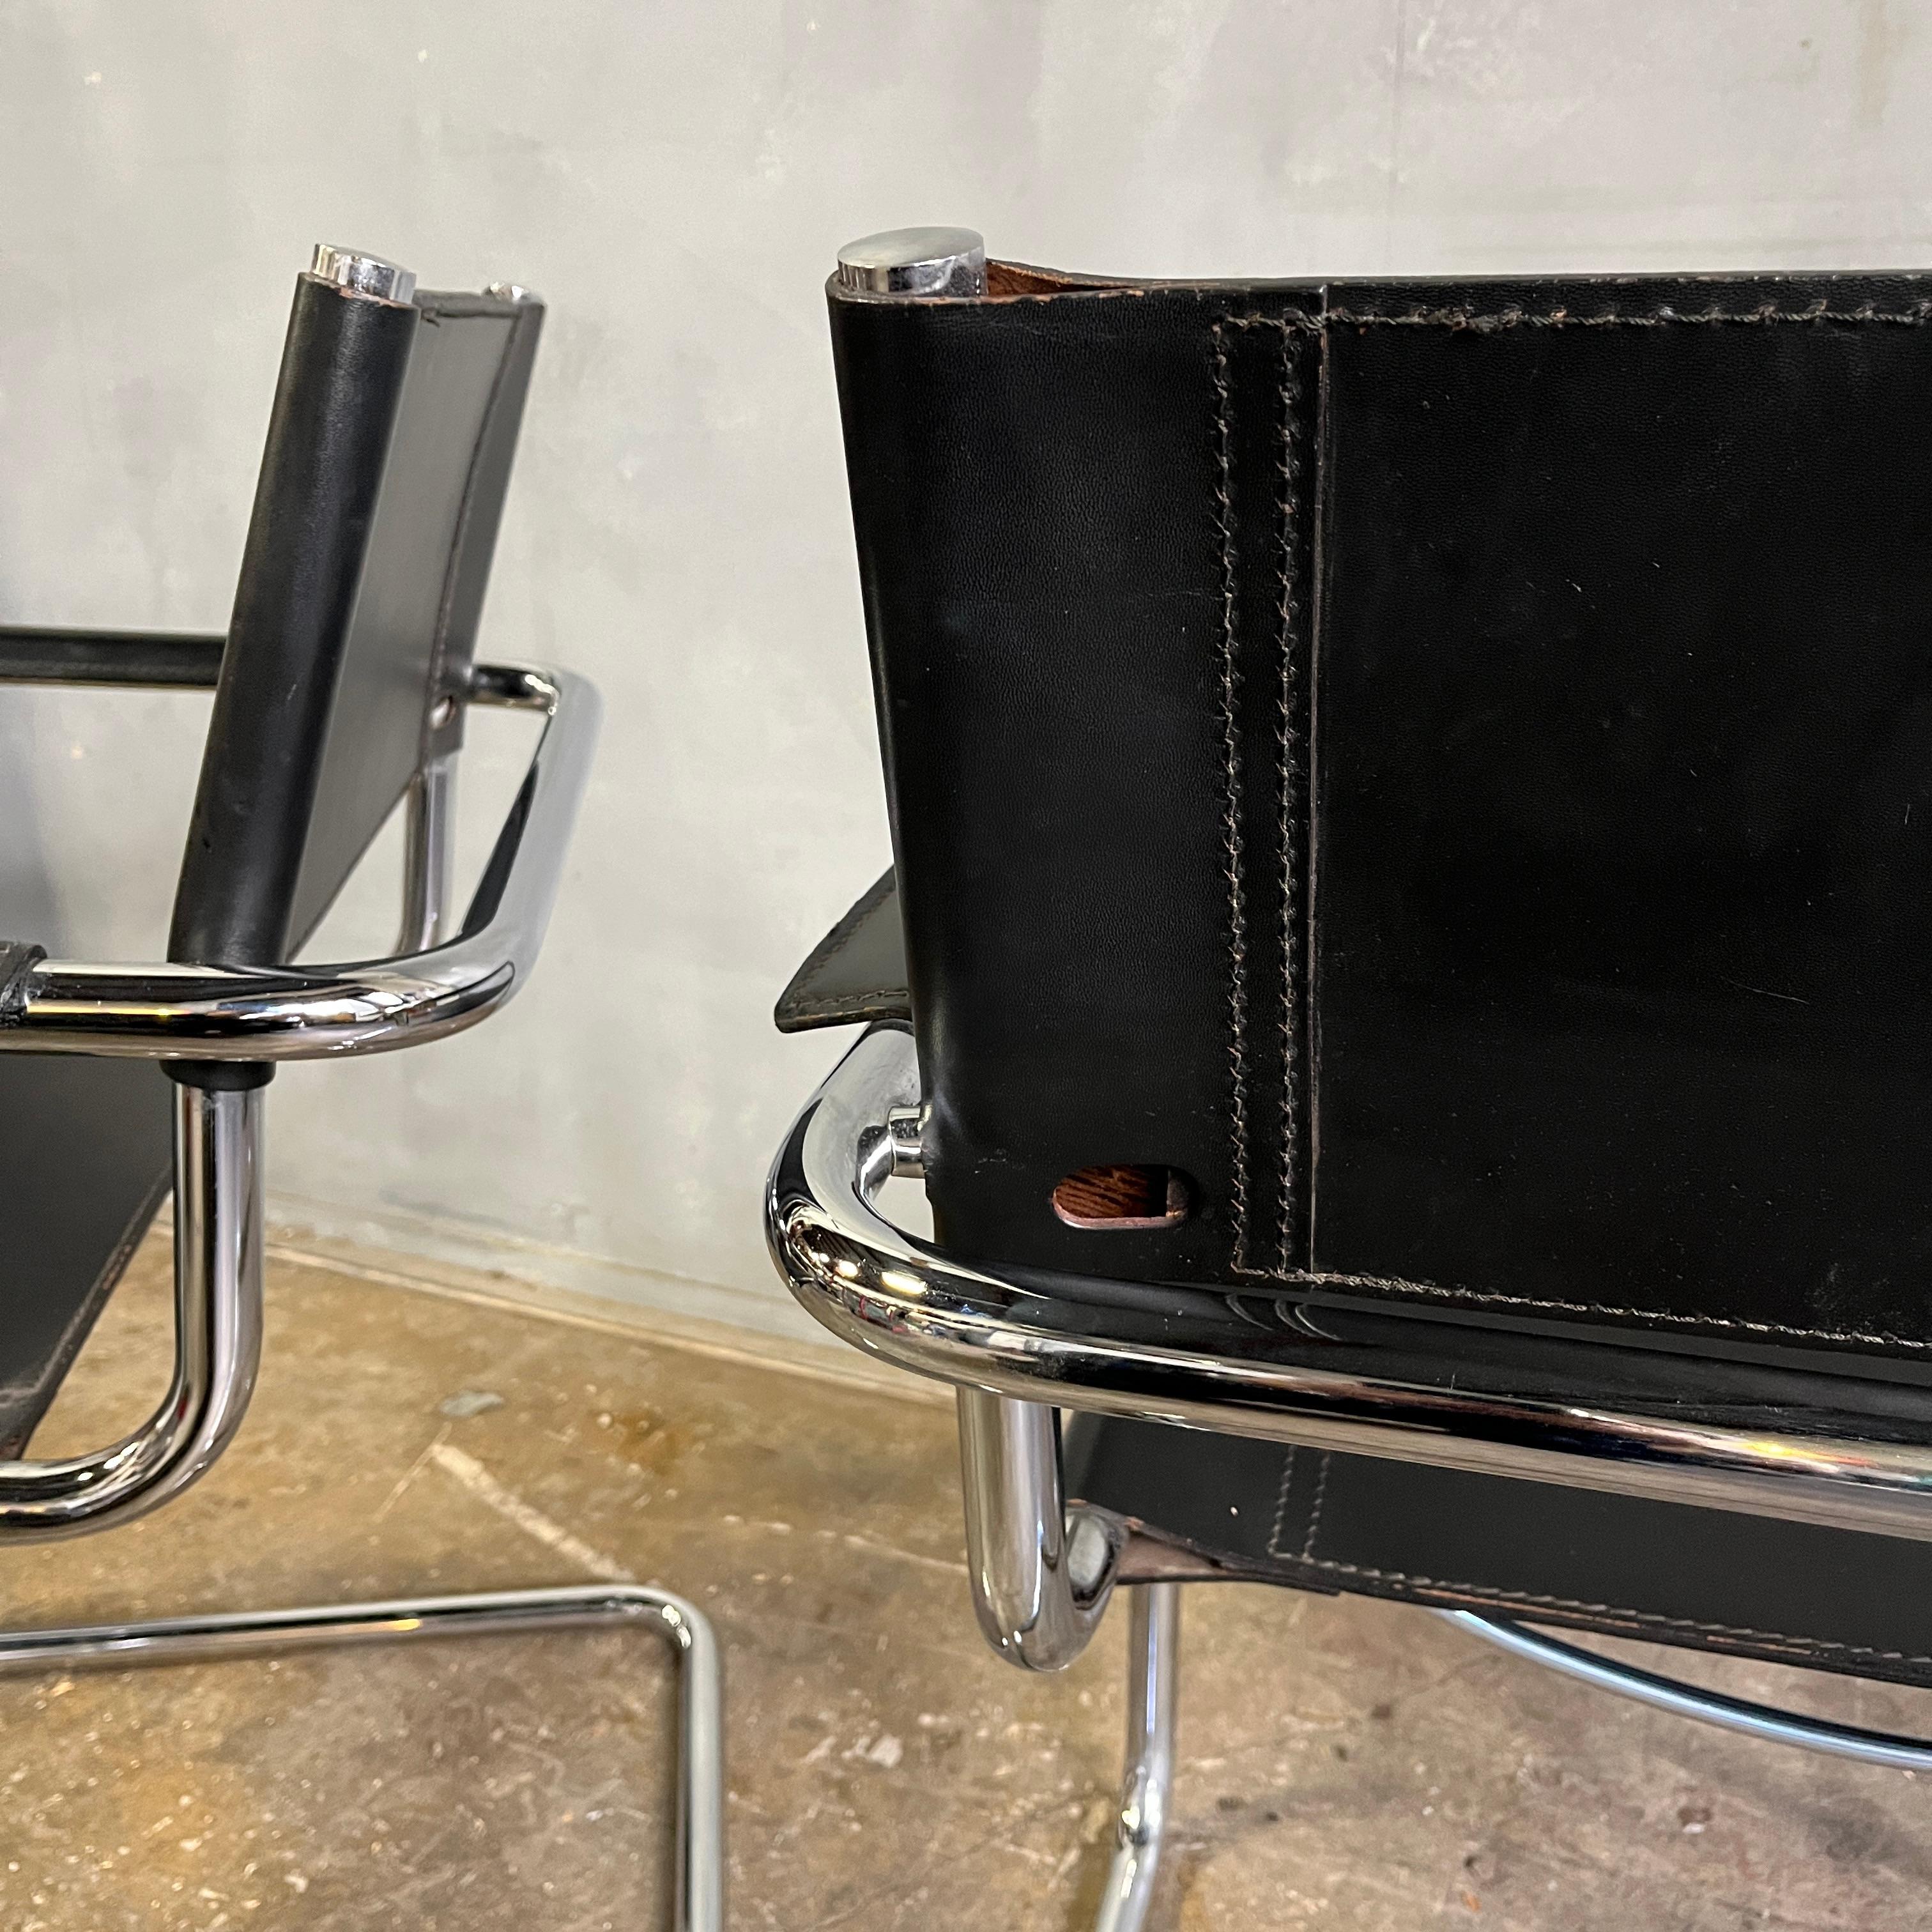 Fauteuils luge iconiques de Bauhaus en acier tubulaire chromé avec assise et dossier en cuir noir et accoudoirs en cuir noir en état quasi neuf. Conçues par Mart Stam en 1927, les chaises de ce style ont été les premières chaises en porte-à-faux de